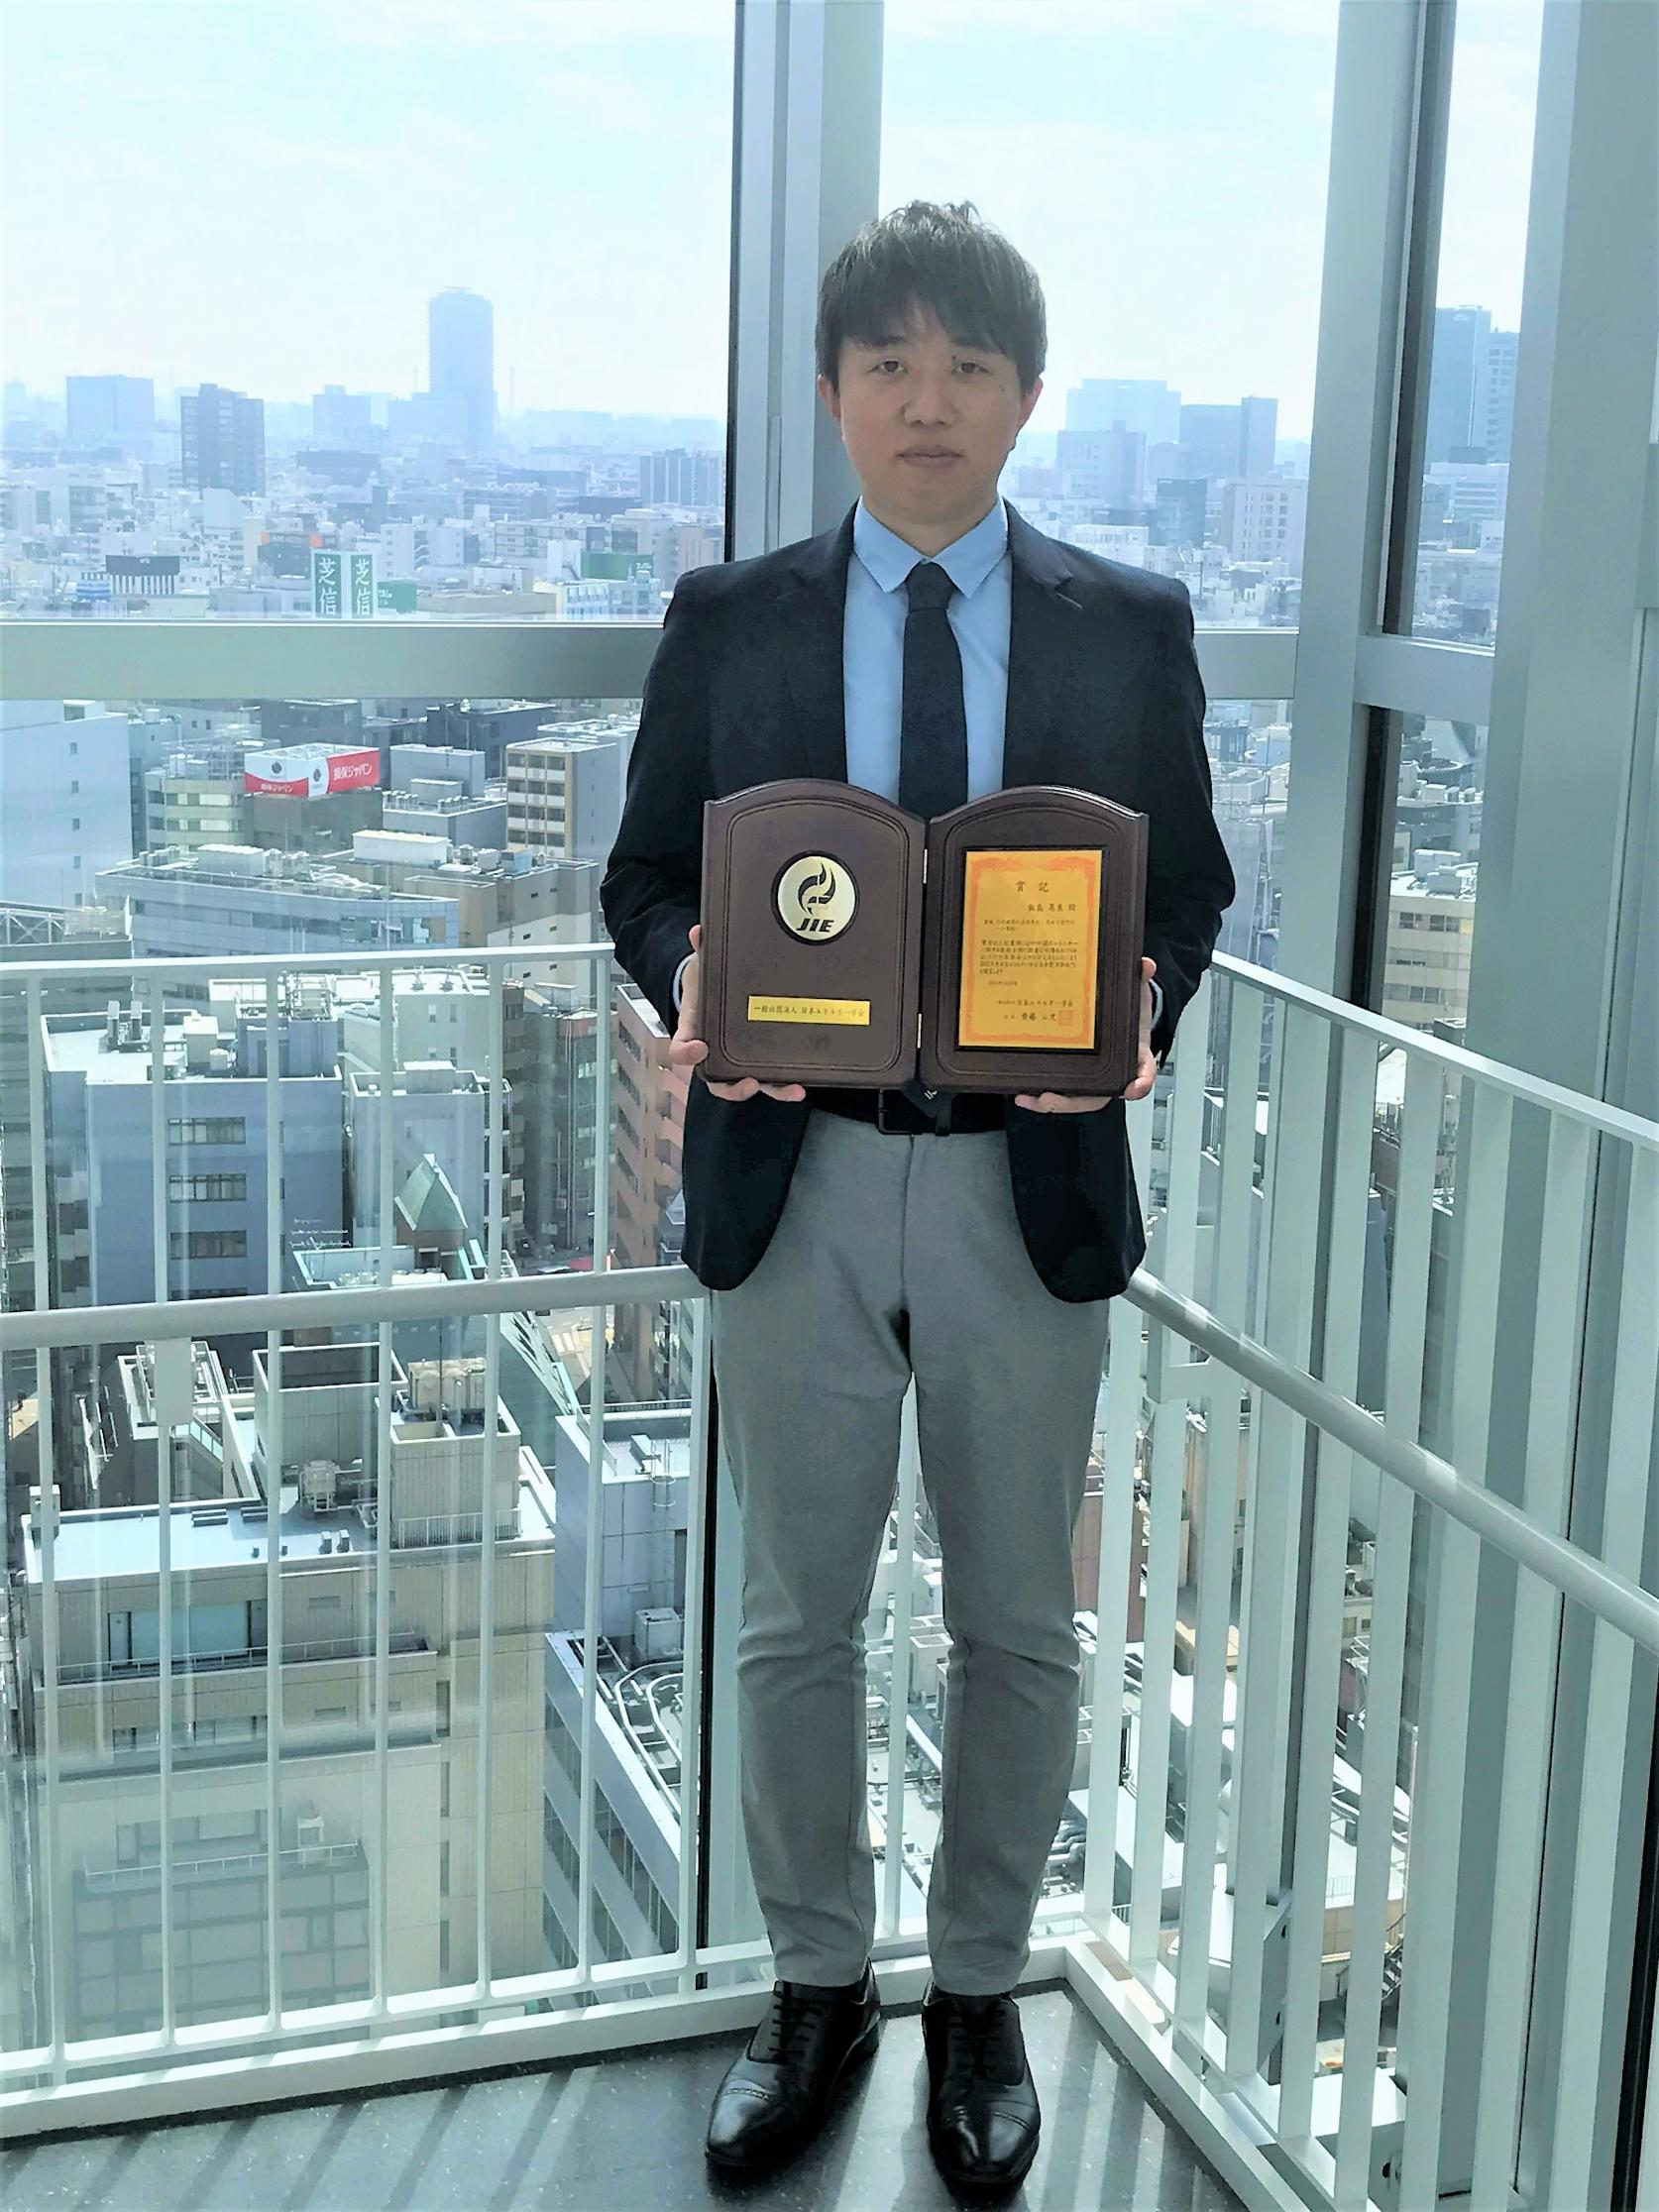 2022年度日本エネルギー学会表彰受賞者が発表され、機械工学科 飯島晃良准教授が、日本エネルギー学会進歩賞（学術部門）を受賞しました。